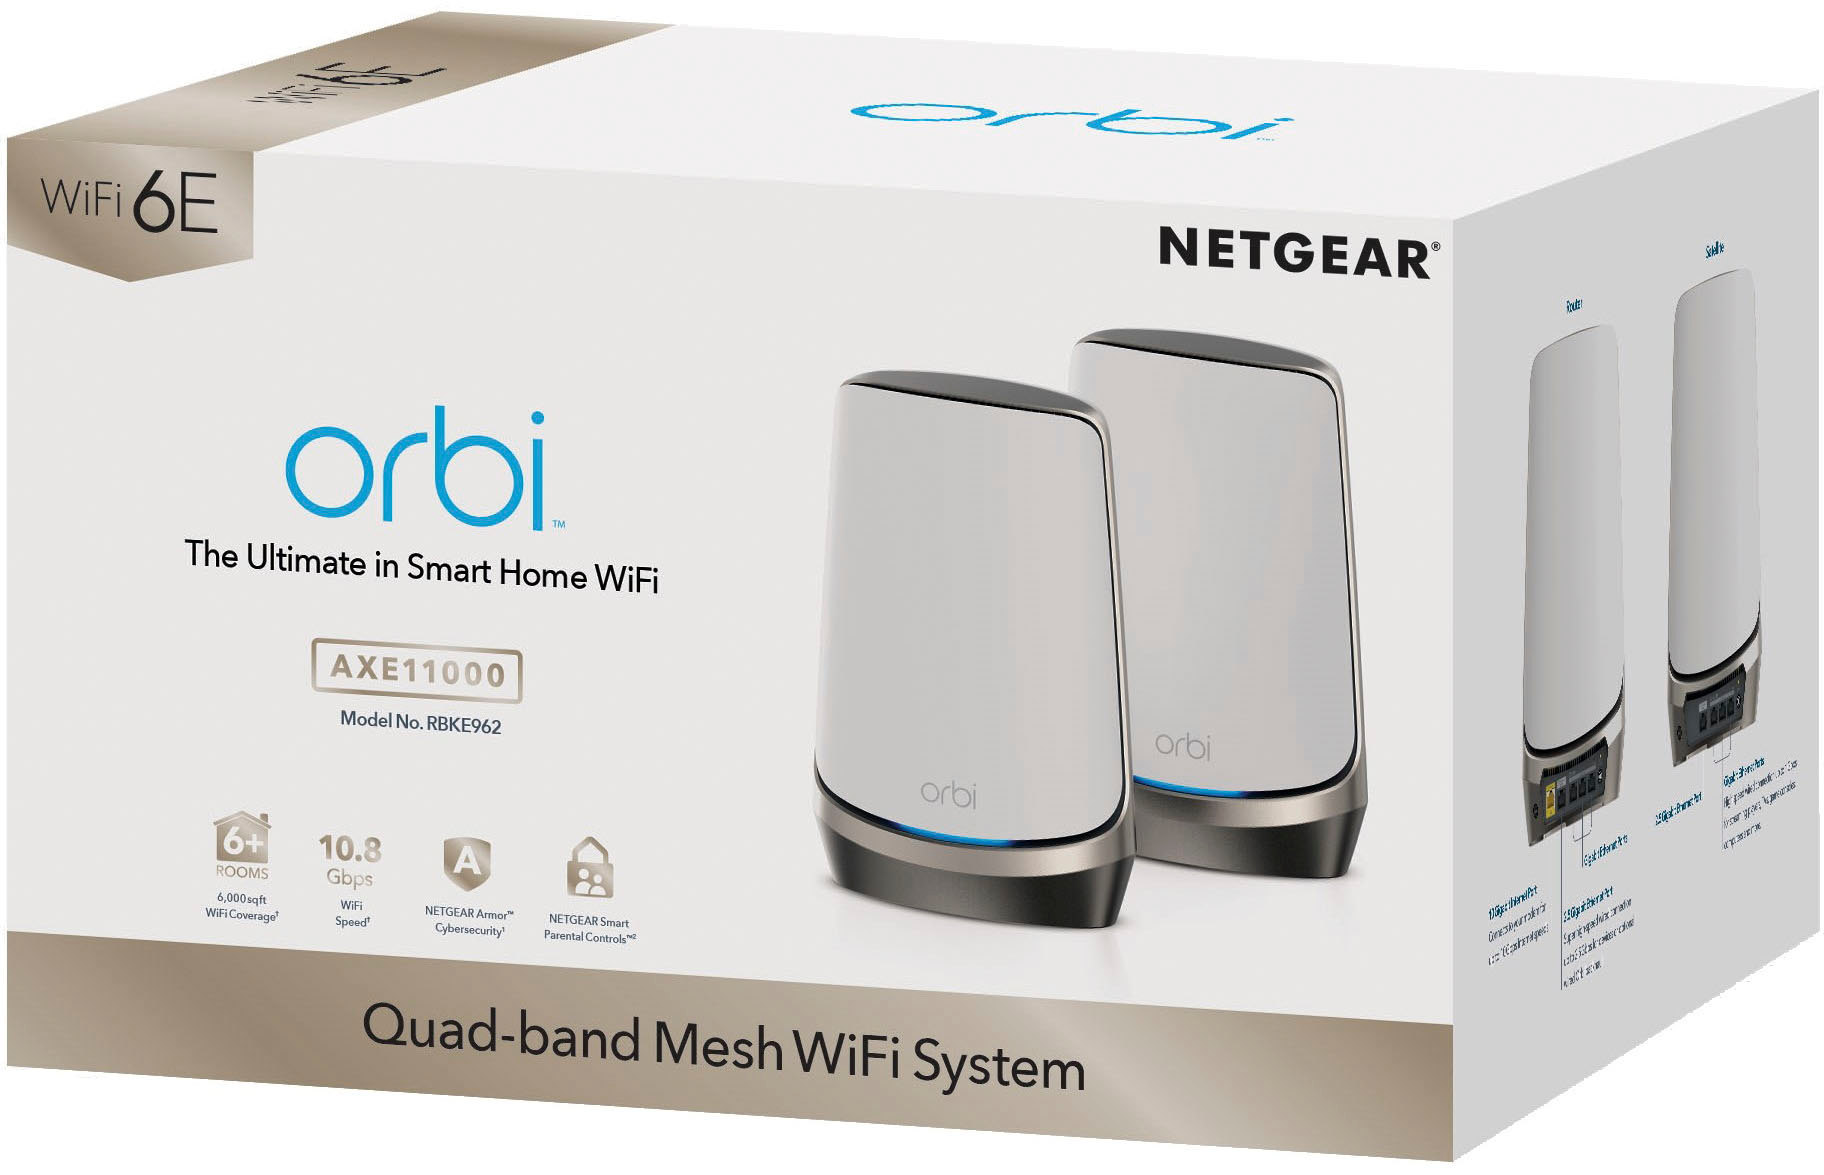 Netgear Orbi WiFi 6E, un routeur domestique au top - Objets du Futur %